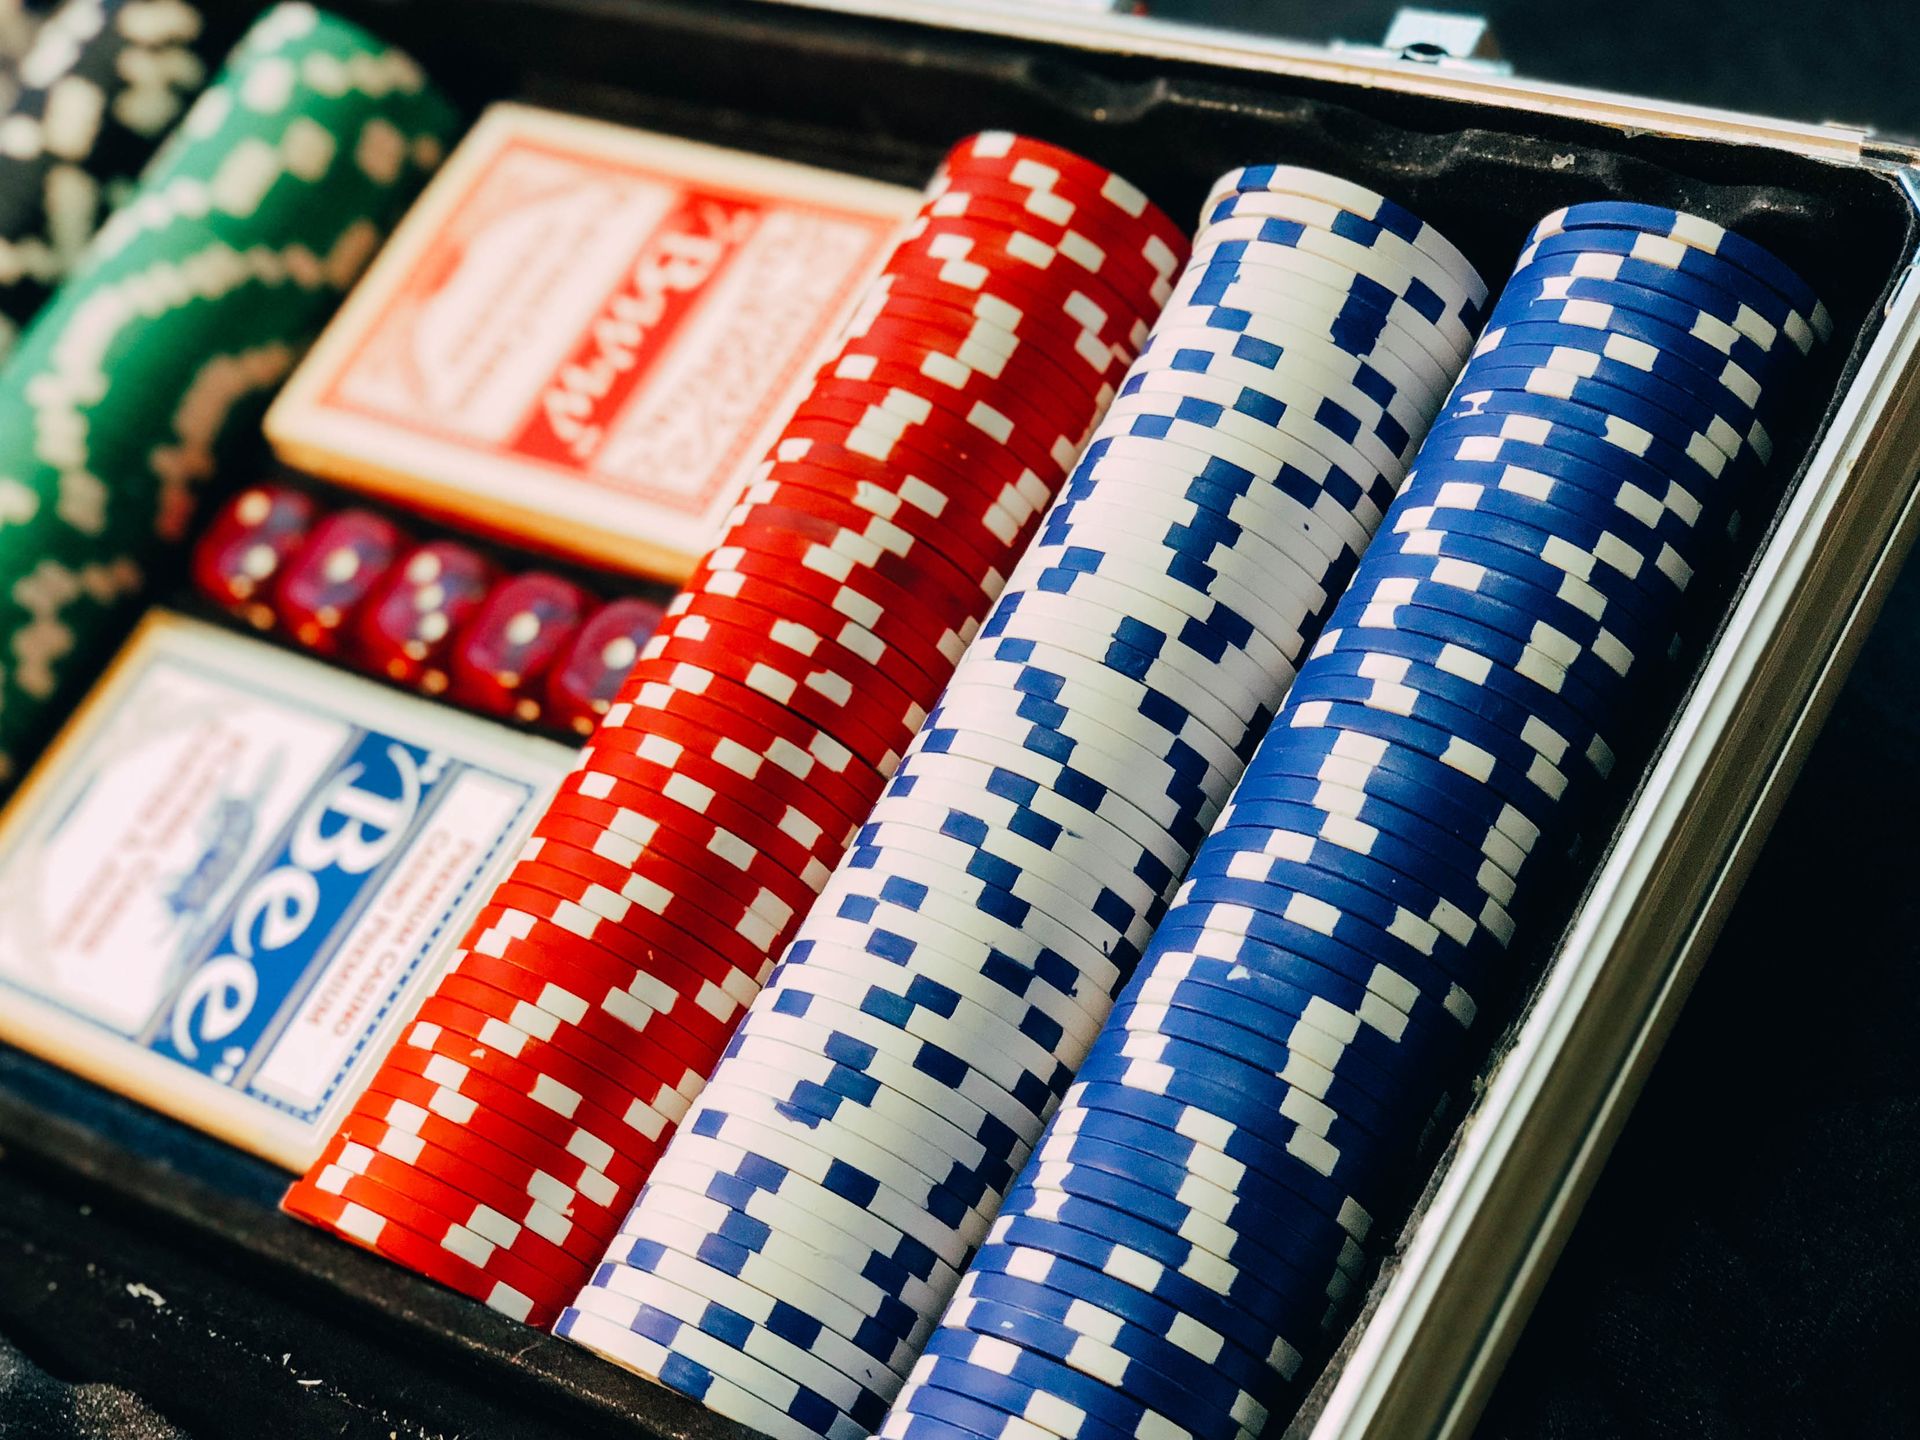 Korzyści, na które mogą liczyć gracze z wysokimi stawkami w Lemon casino